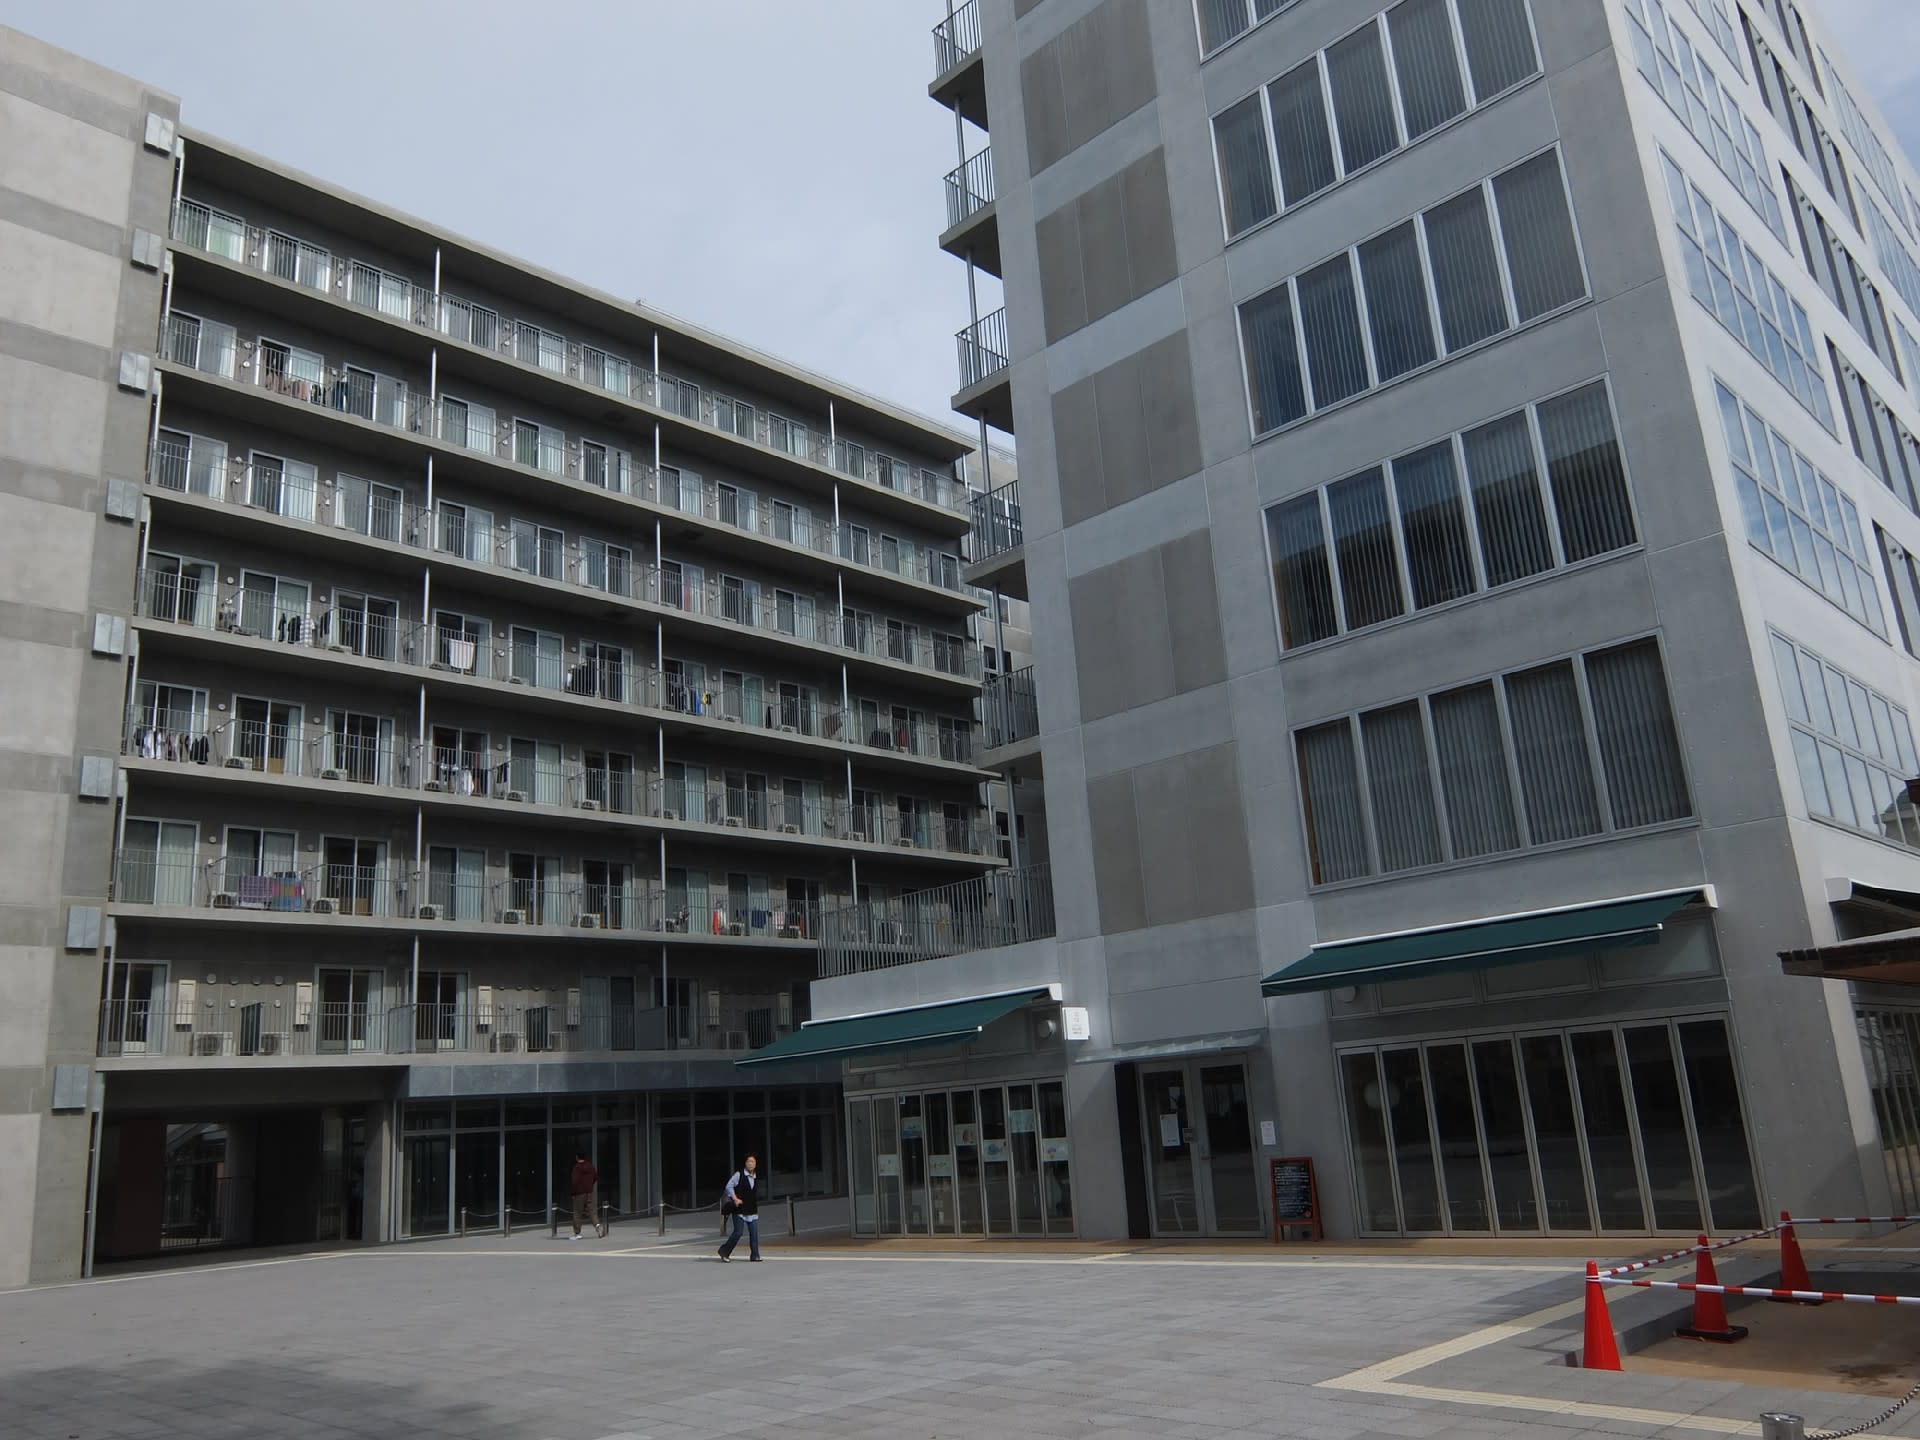 文京区の旅 9月にオープンした東京大学目白台ヴィレッジ オーロラ特急 ノスタルジック旅日記